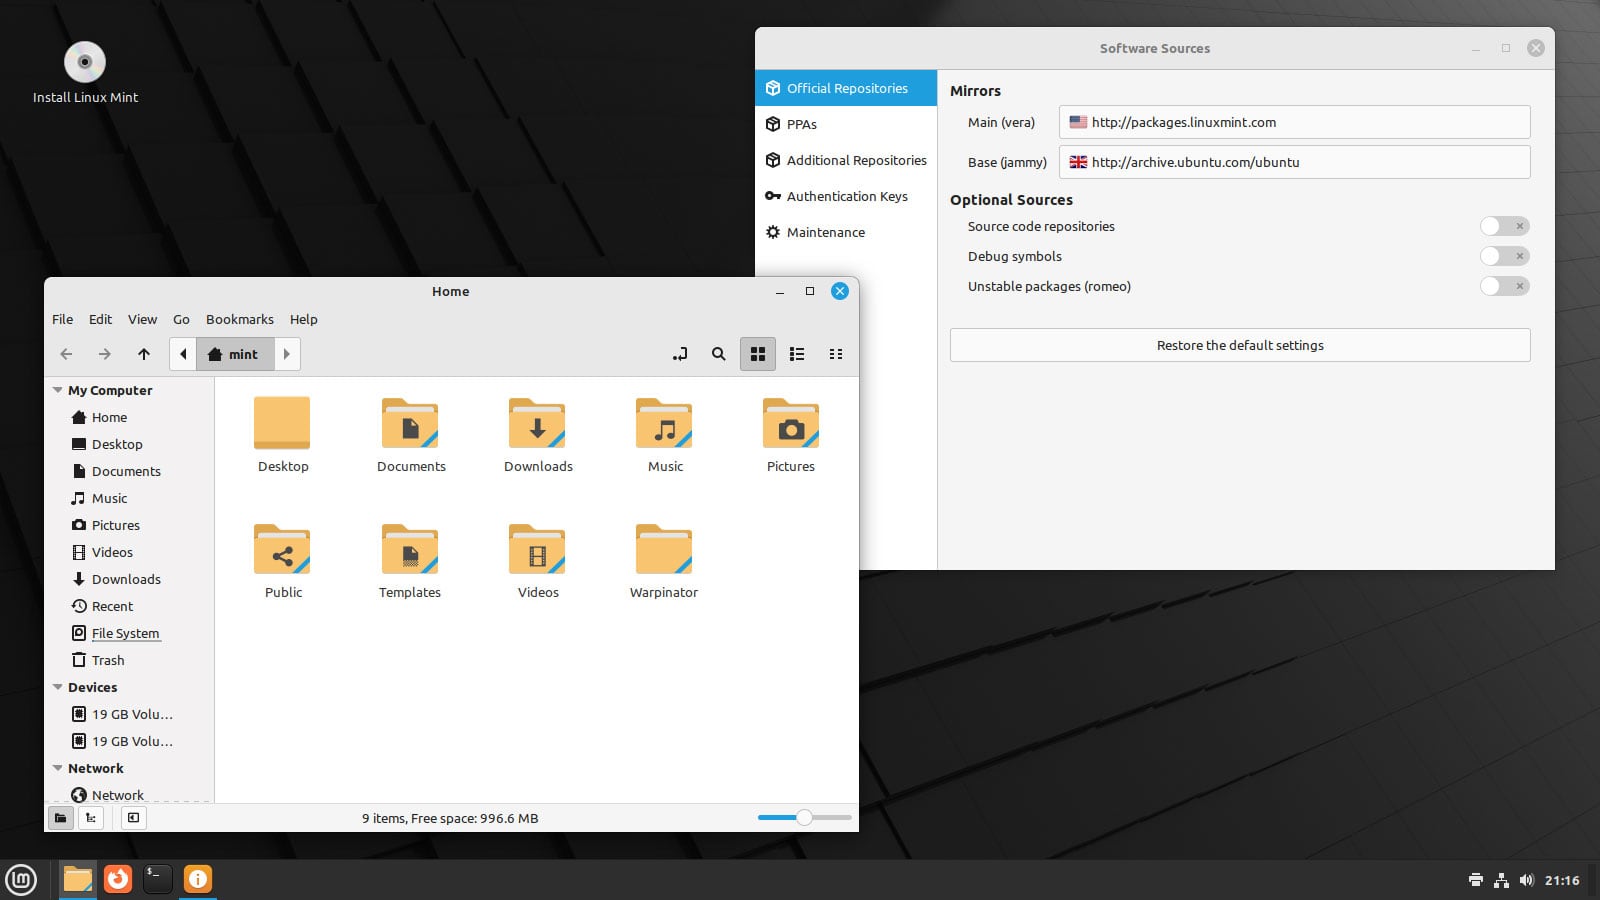 Captura de pantalla del escritorio Linux Mint 21.1 con nuevos íconos de carpeta visibles en el administrador de archivos Nemo